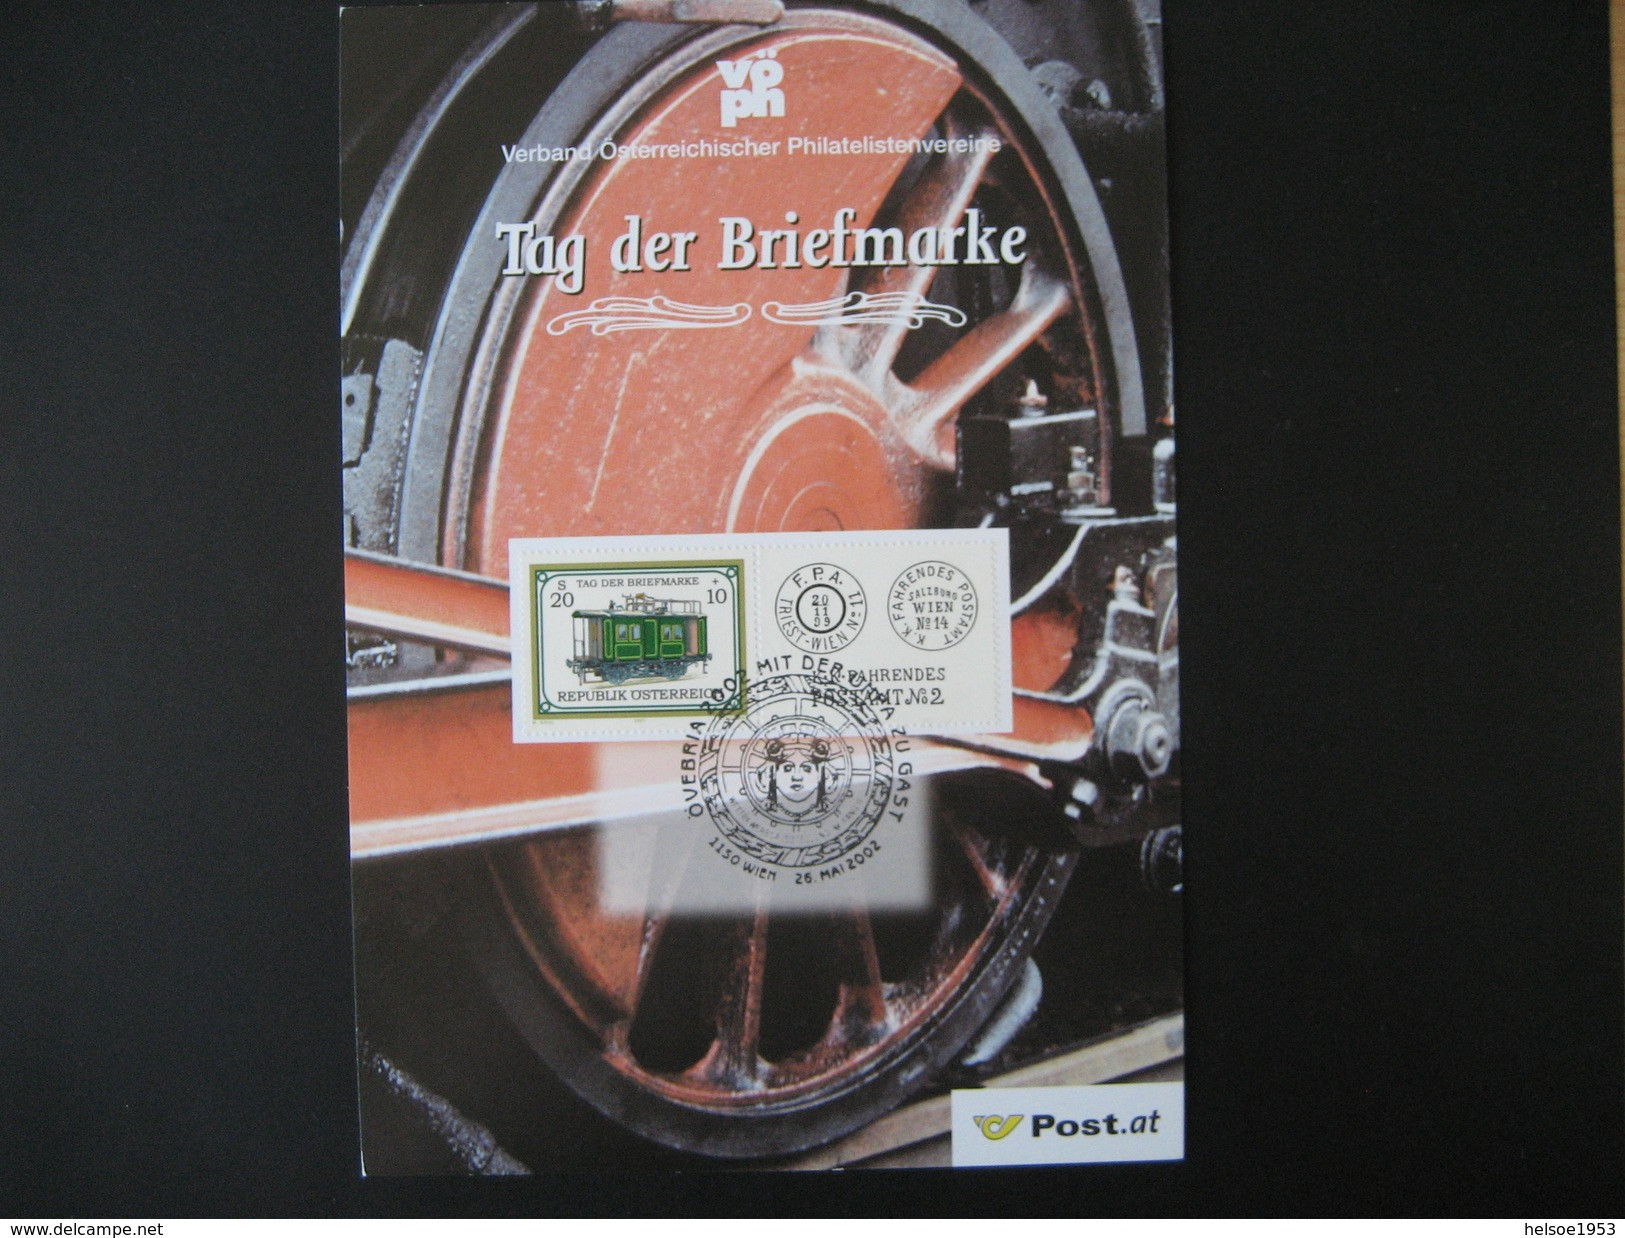 Österreich- VÖPh Jahresgabe 2001 Mit Marke Tag Der Briefmarke 2001 ANK 2379 - Briefe U. Dokumente